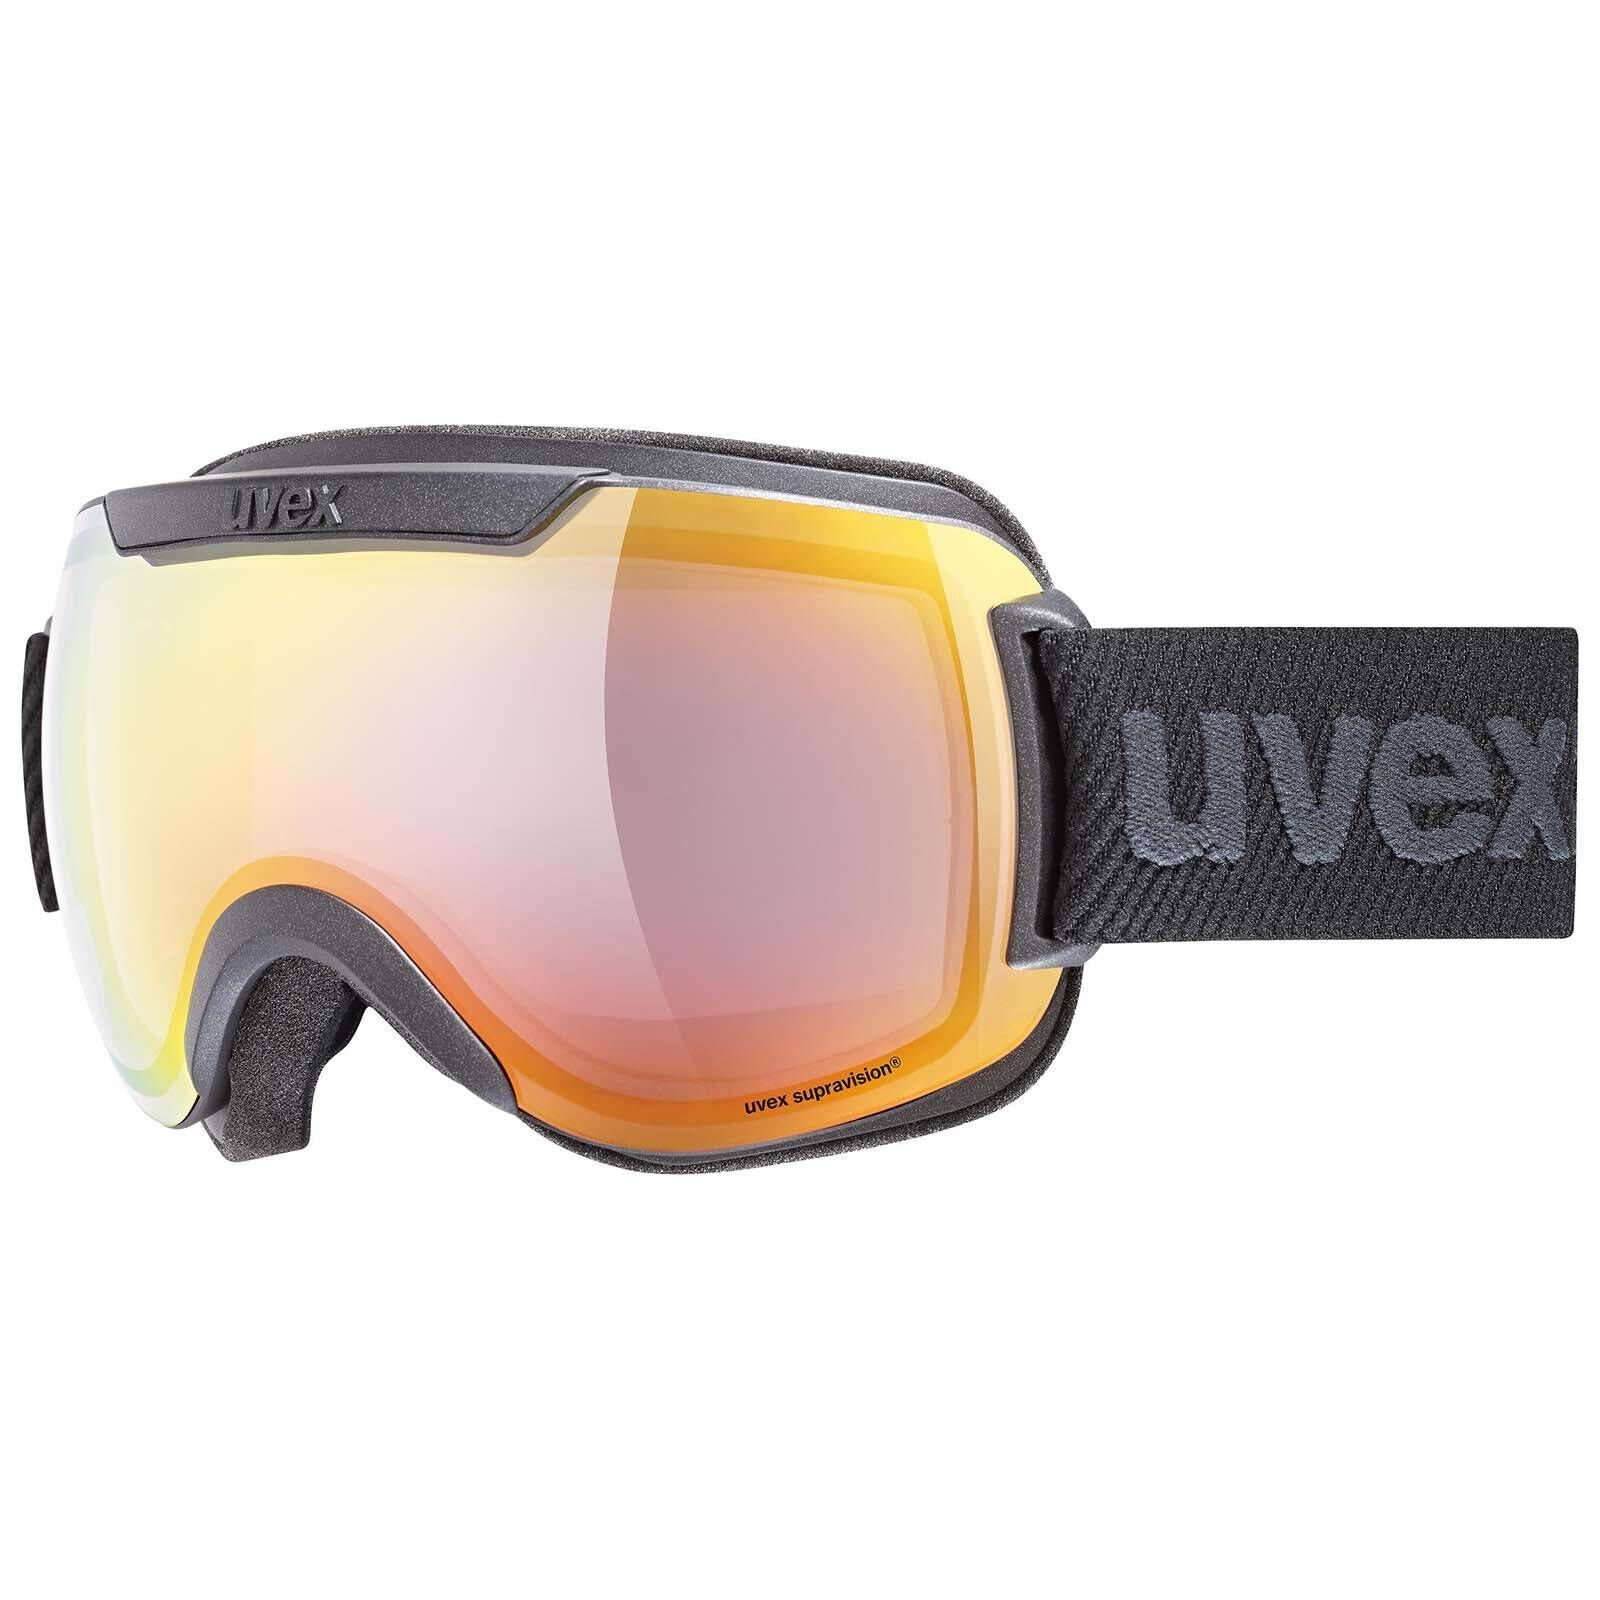 Uvex / 2000 FM Skibrille Snowboardbrille DOWNHILL Skibrille